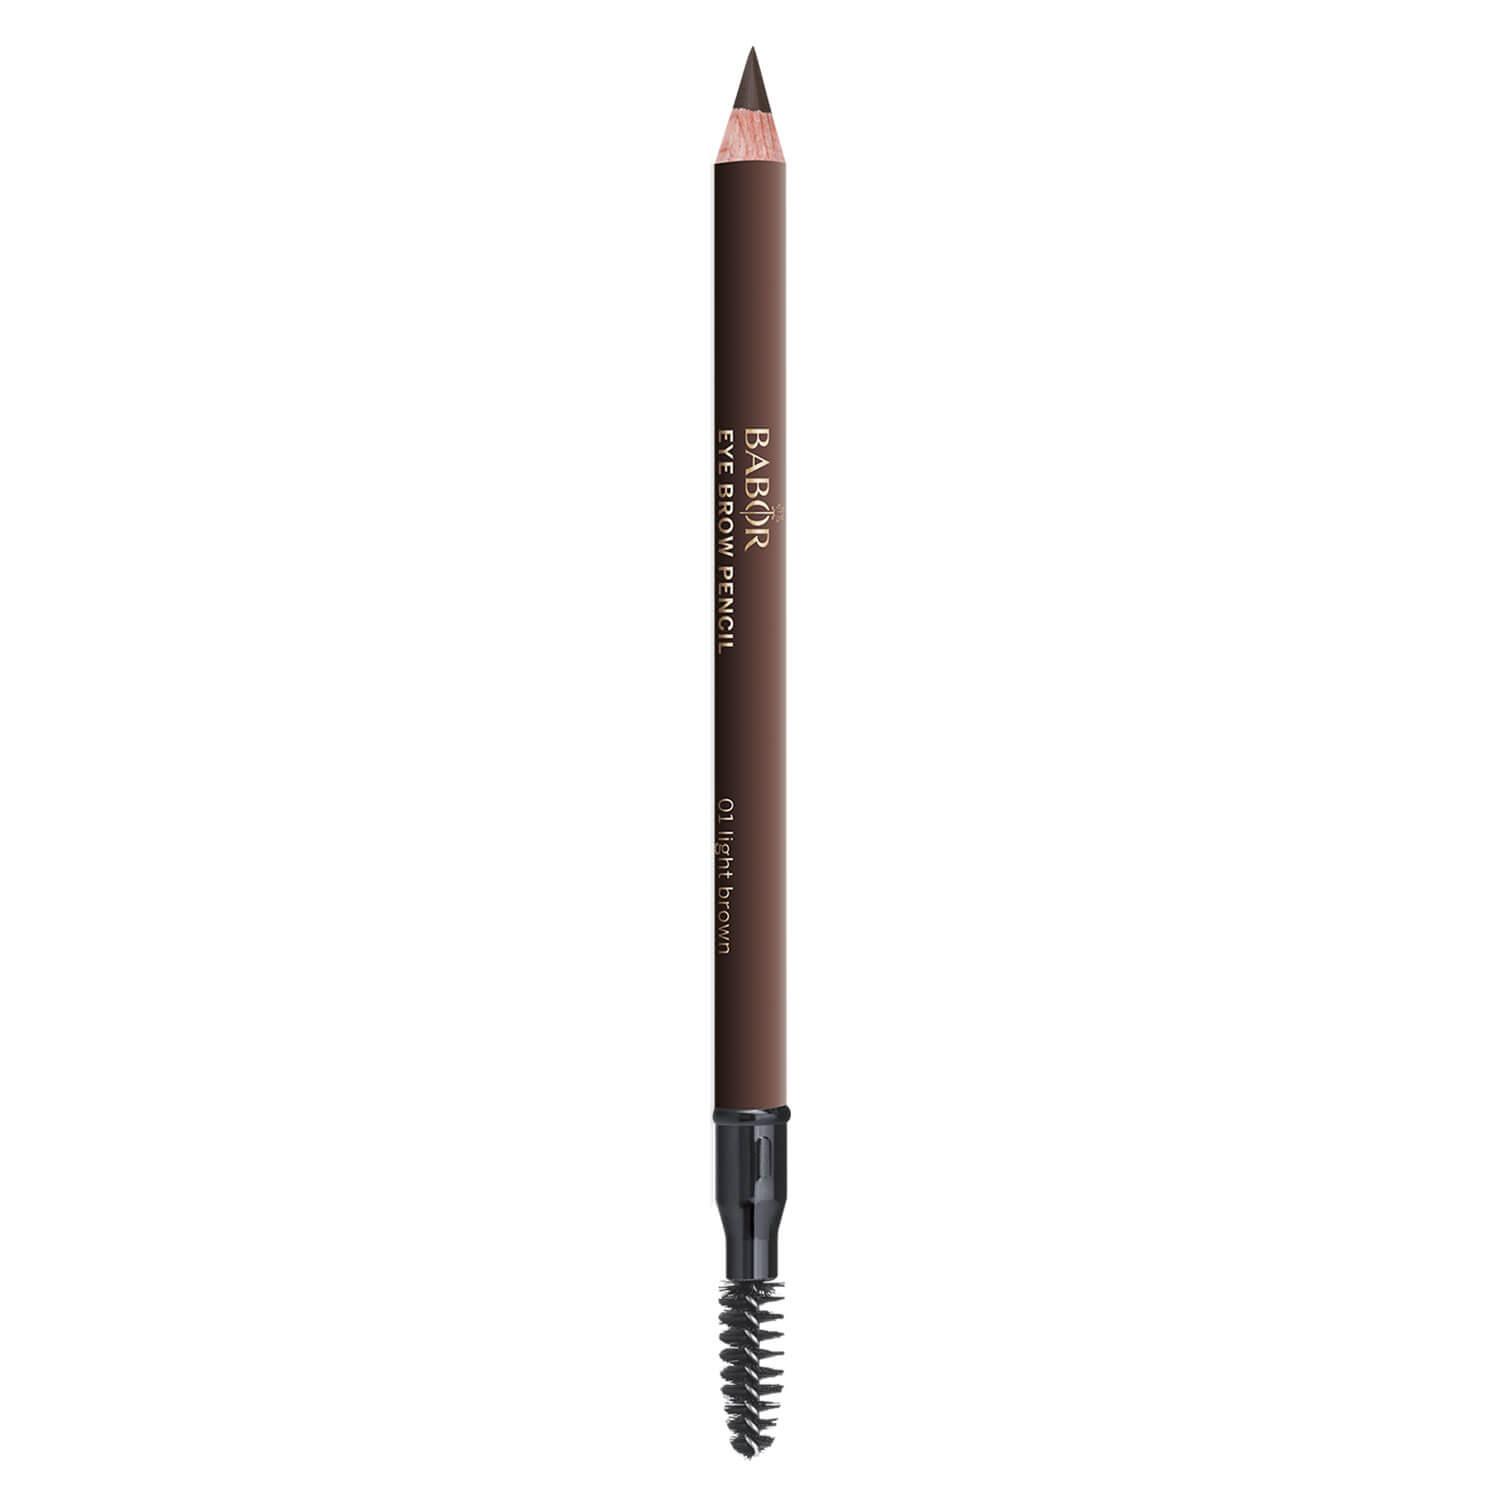 BABOR MAKE UP - Eye Brow Pencil 01 Light Brown